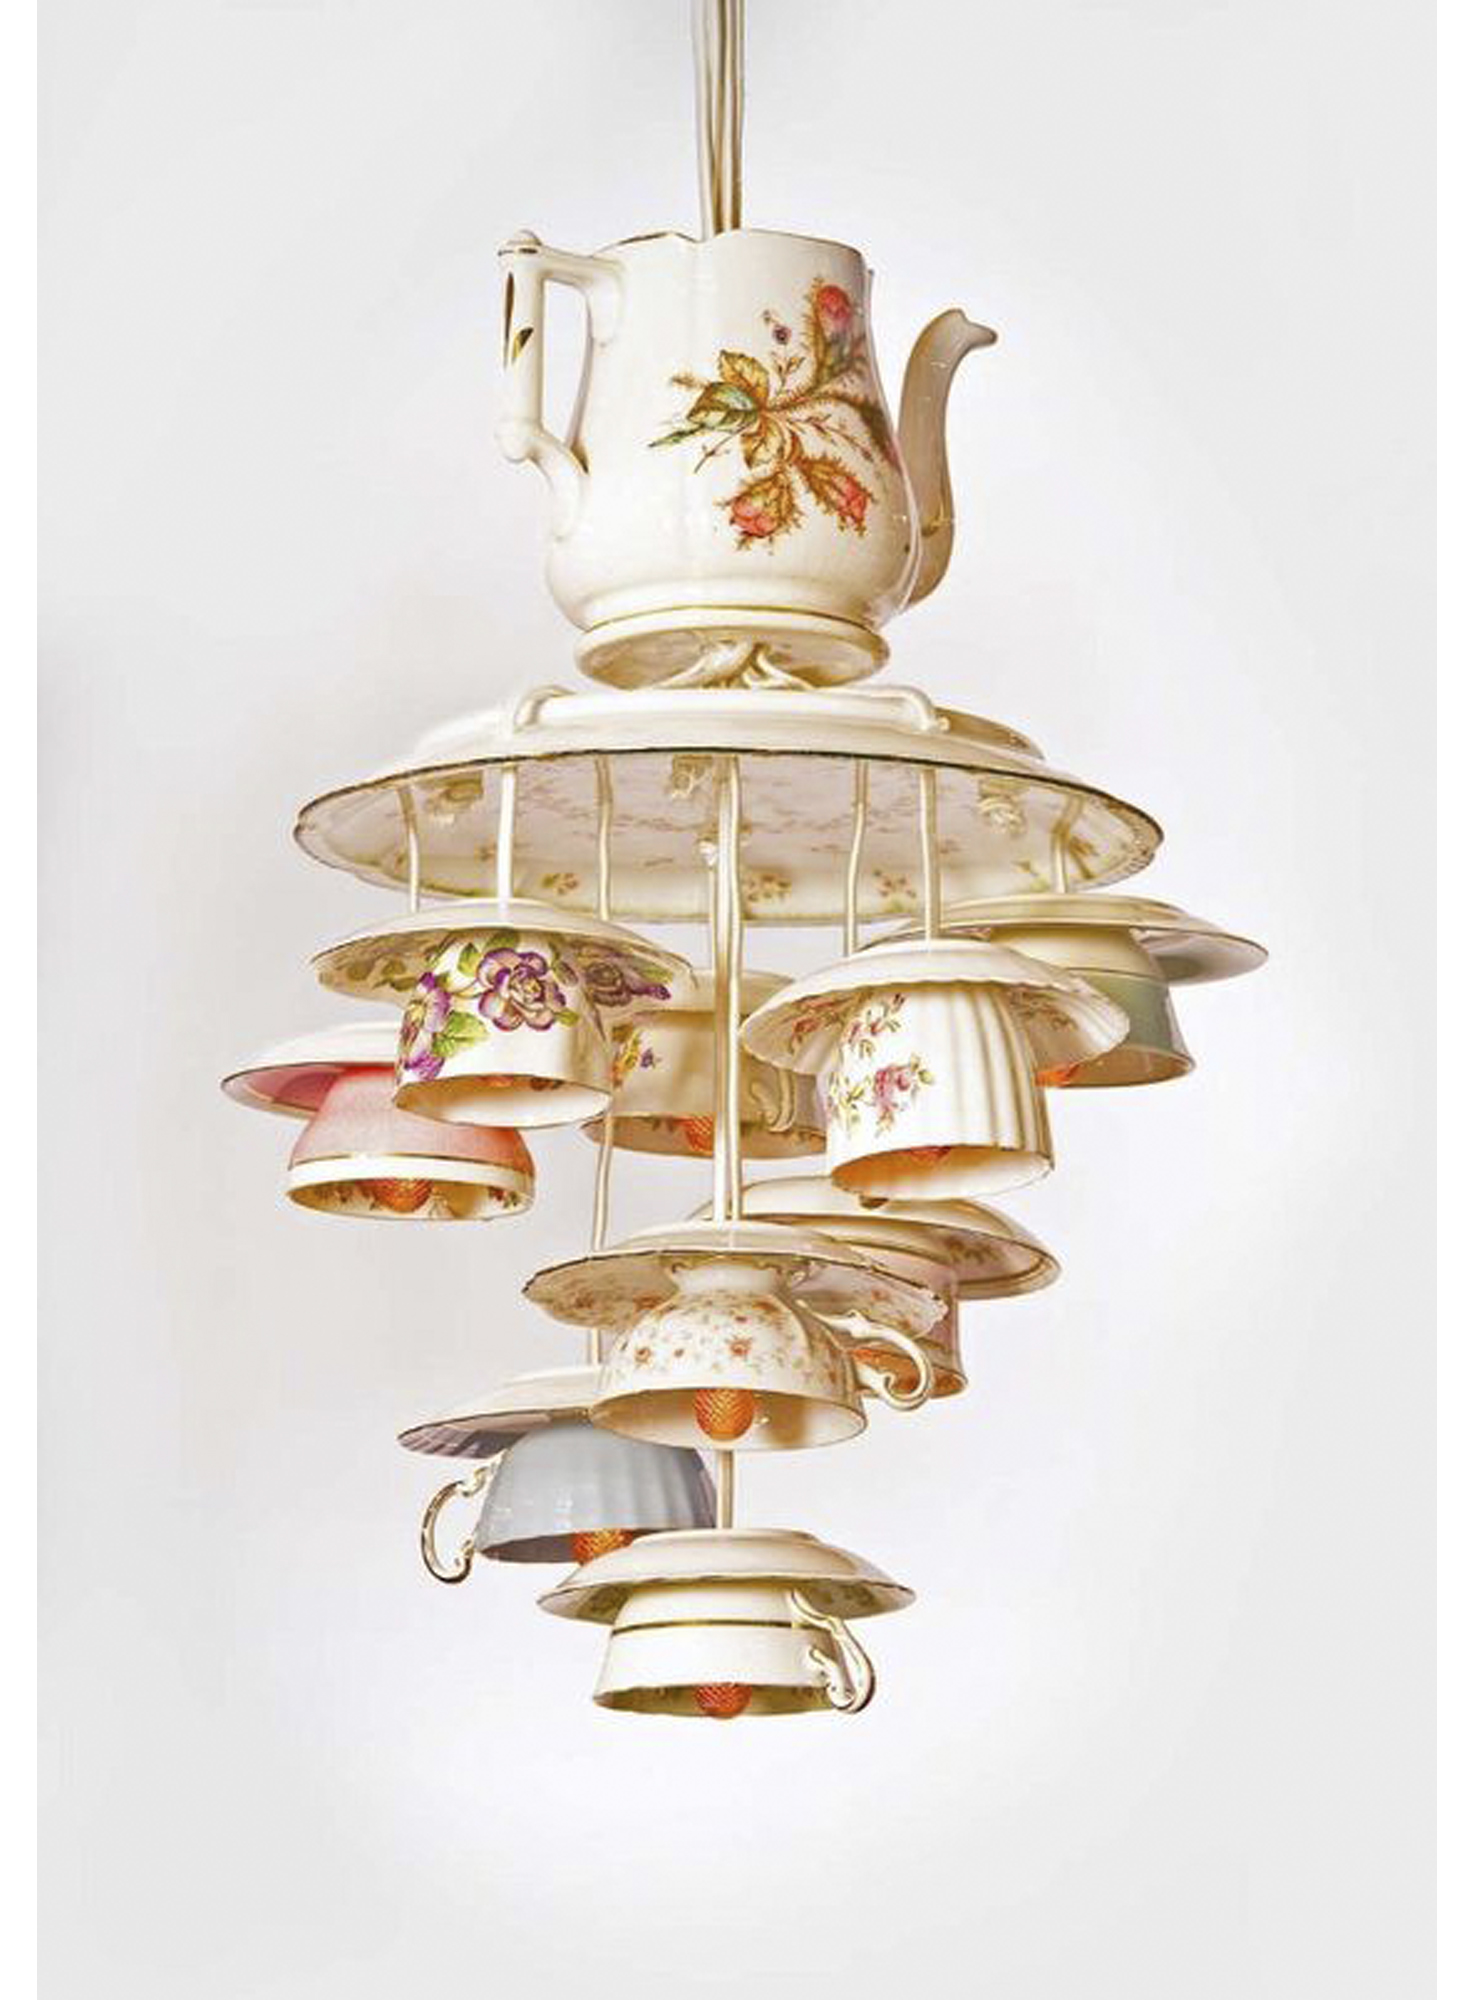 lighting-teacups